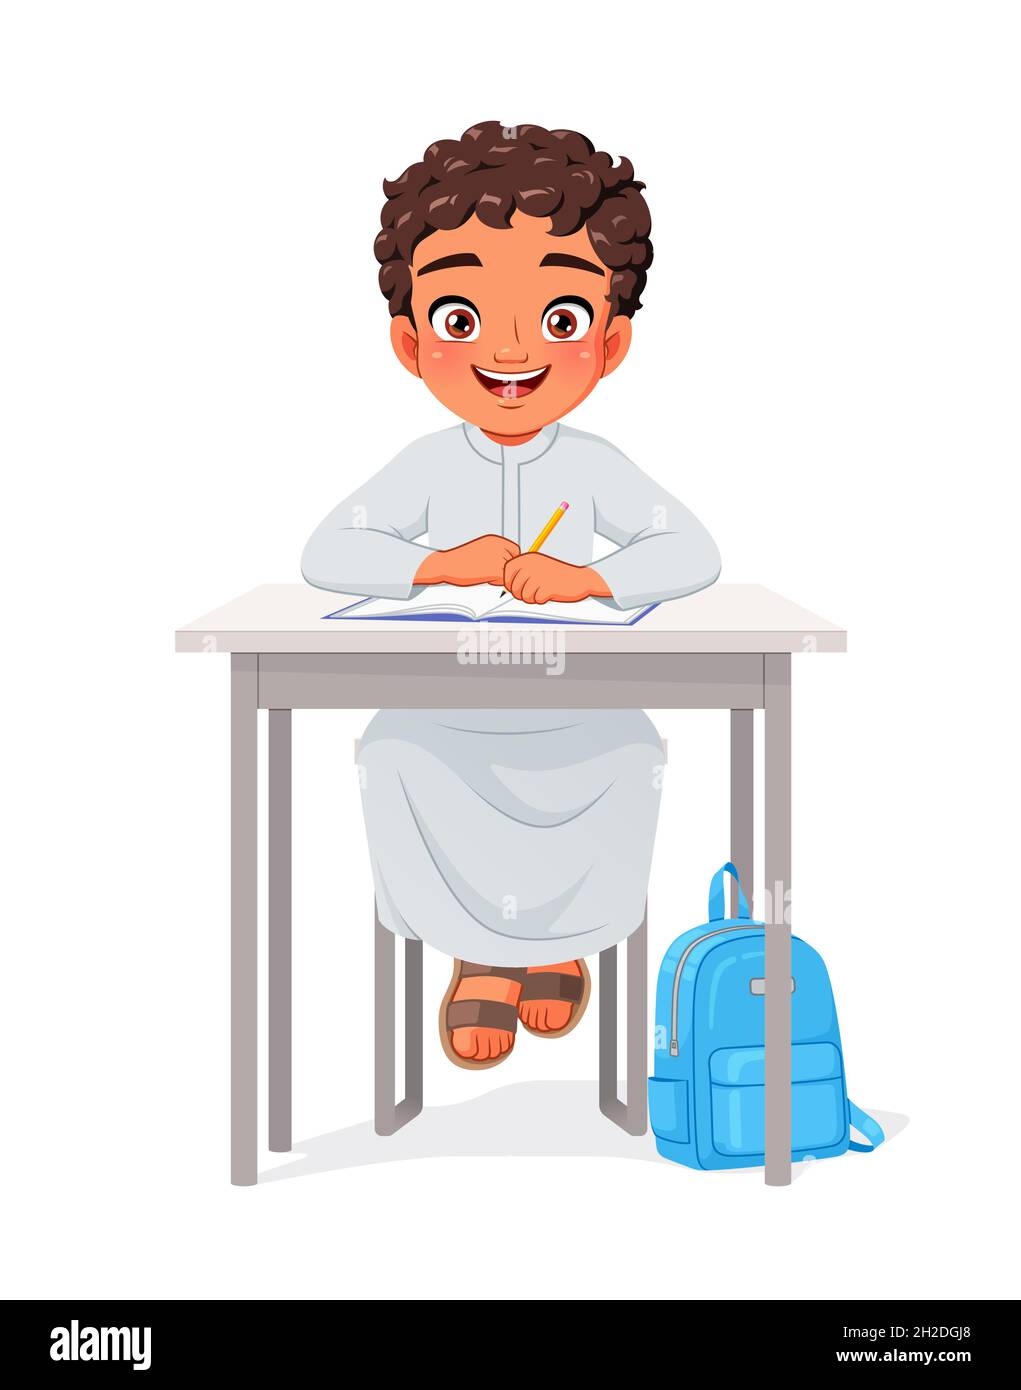 Happy Arab boy sitting at desk. Cartoon vector illustration. Stock Vector